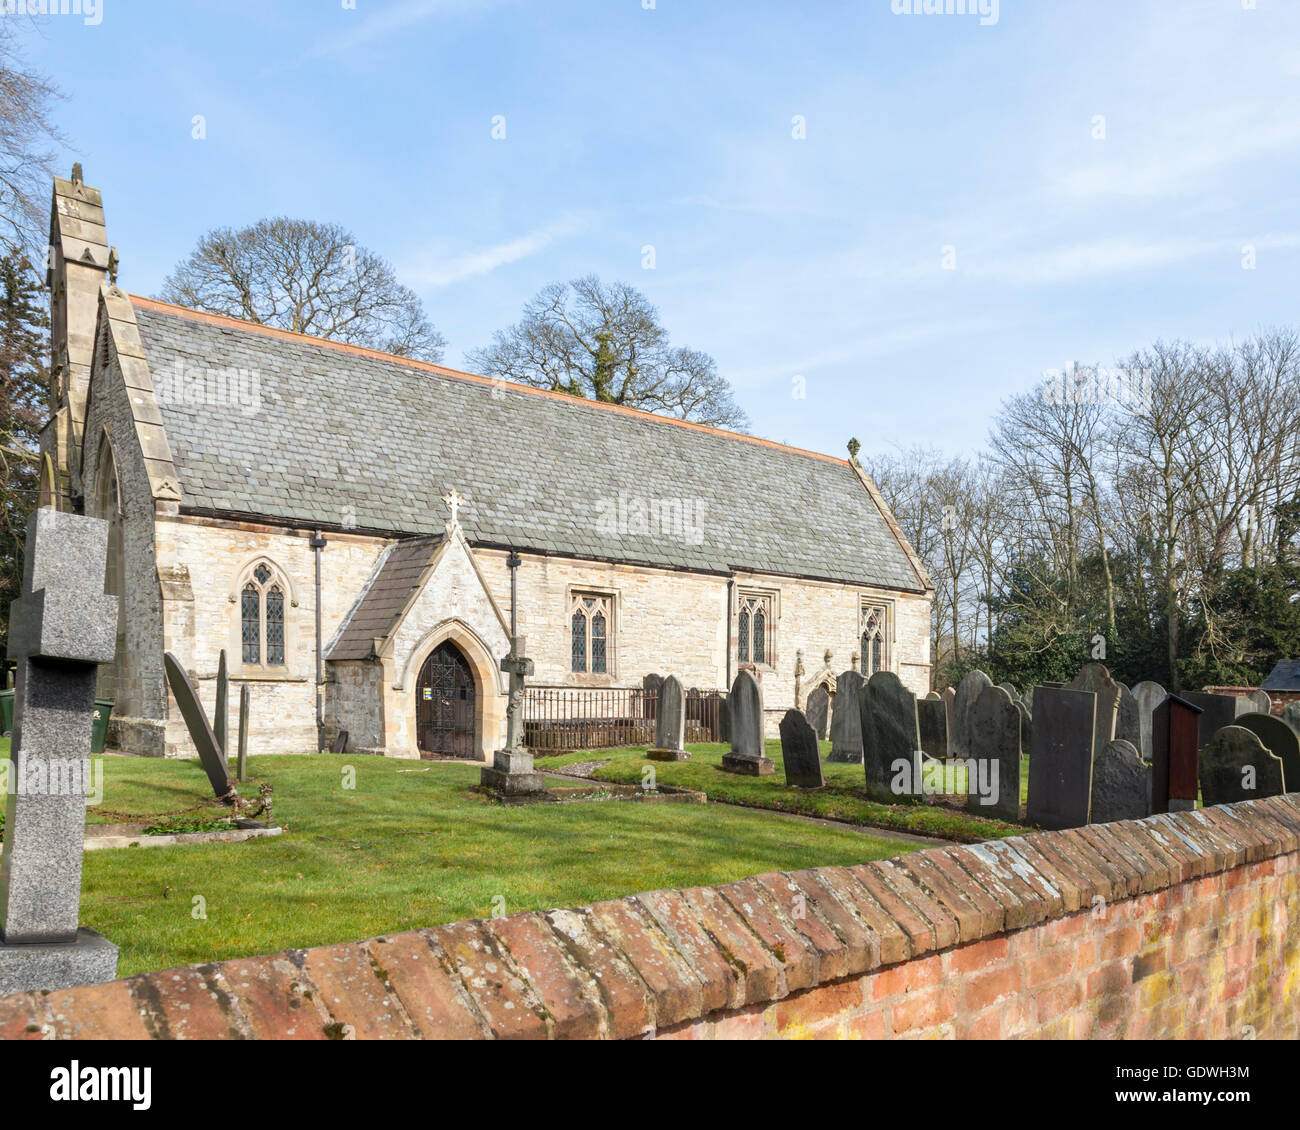 St Giles' Iglesia en Costock, grado II, se encuentra una iglesia medieval de especial interés histórico y arquitectónico, Nottinghamshire, Inglaterra, Reino Unido. Foto de stock